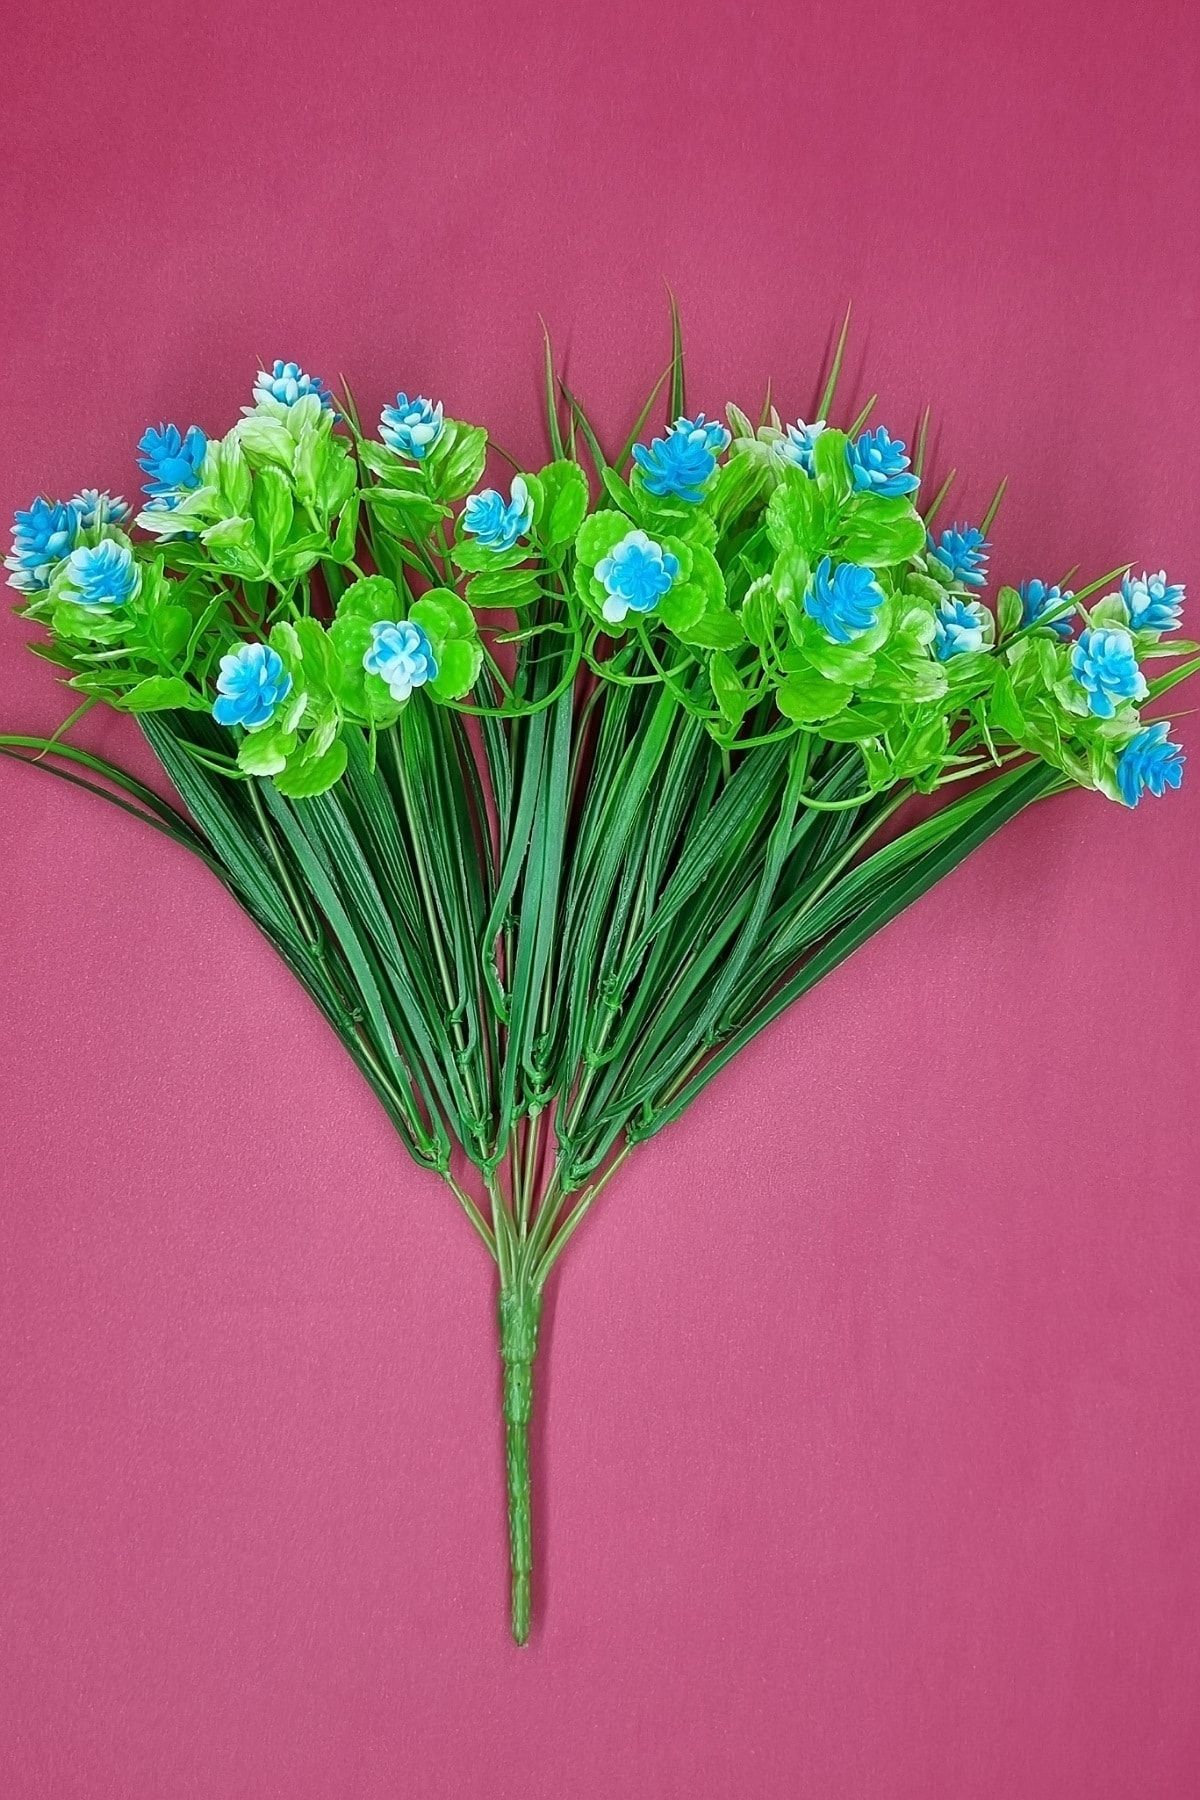 MD Aspiz Flowers Yeşil Yapraklı Mavi Çiçekli Yapay Çiçek Demeti Plastik 9 Pampas Sarmaşık Okaliptus Sarkan Lale )